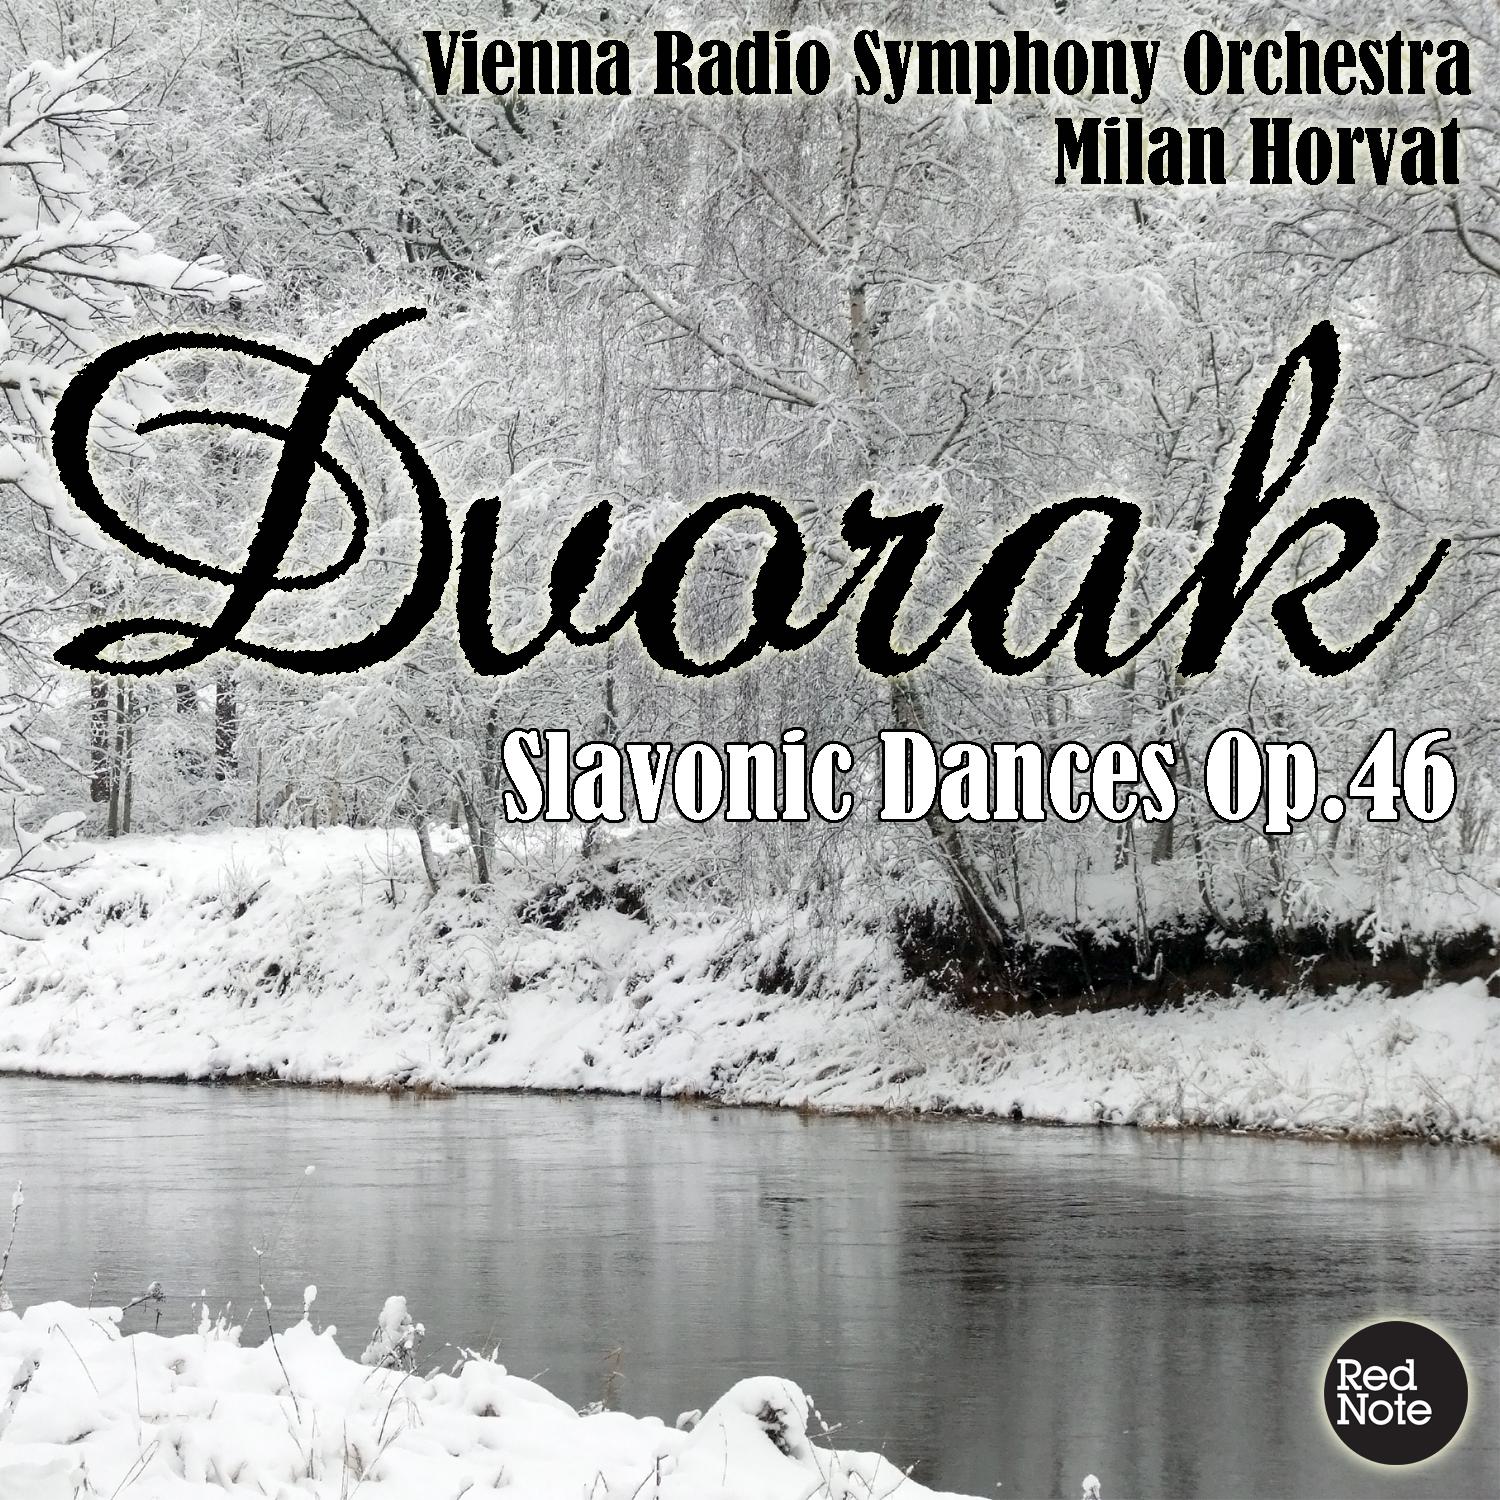 Slavonic Dances in F Major, Op.46: No.4 - Tempo di menuetto